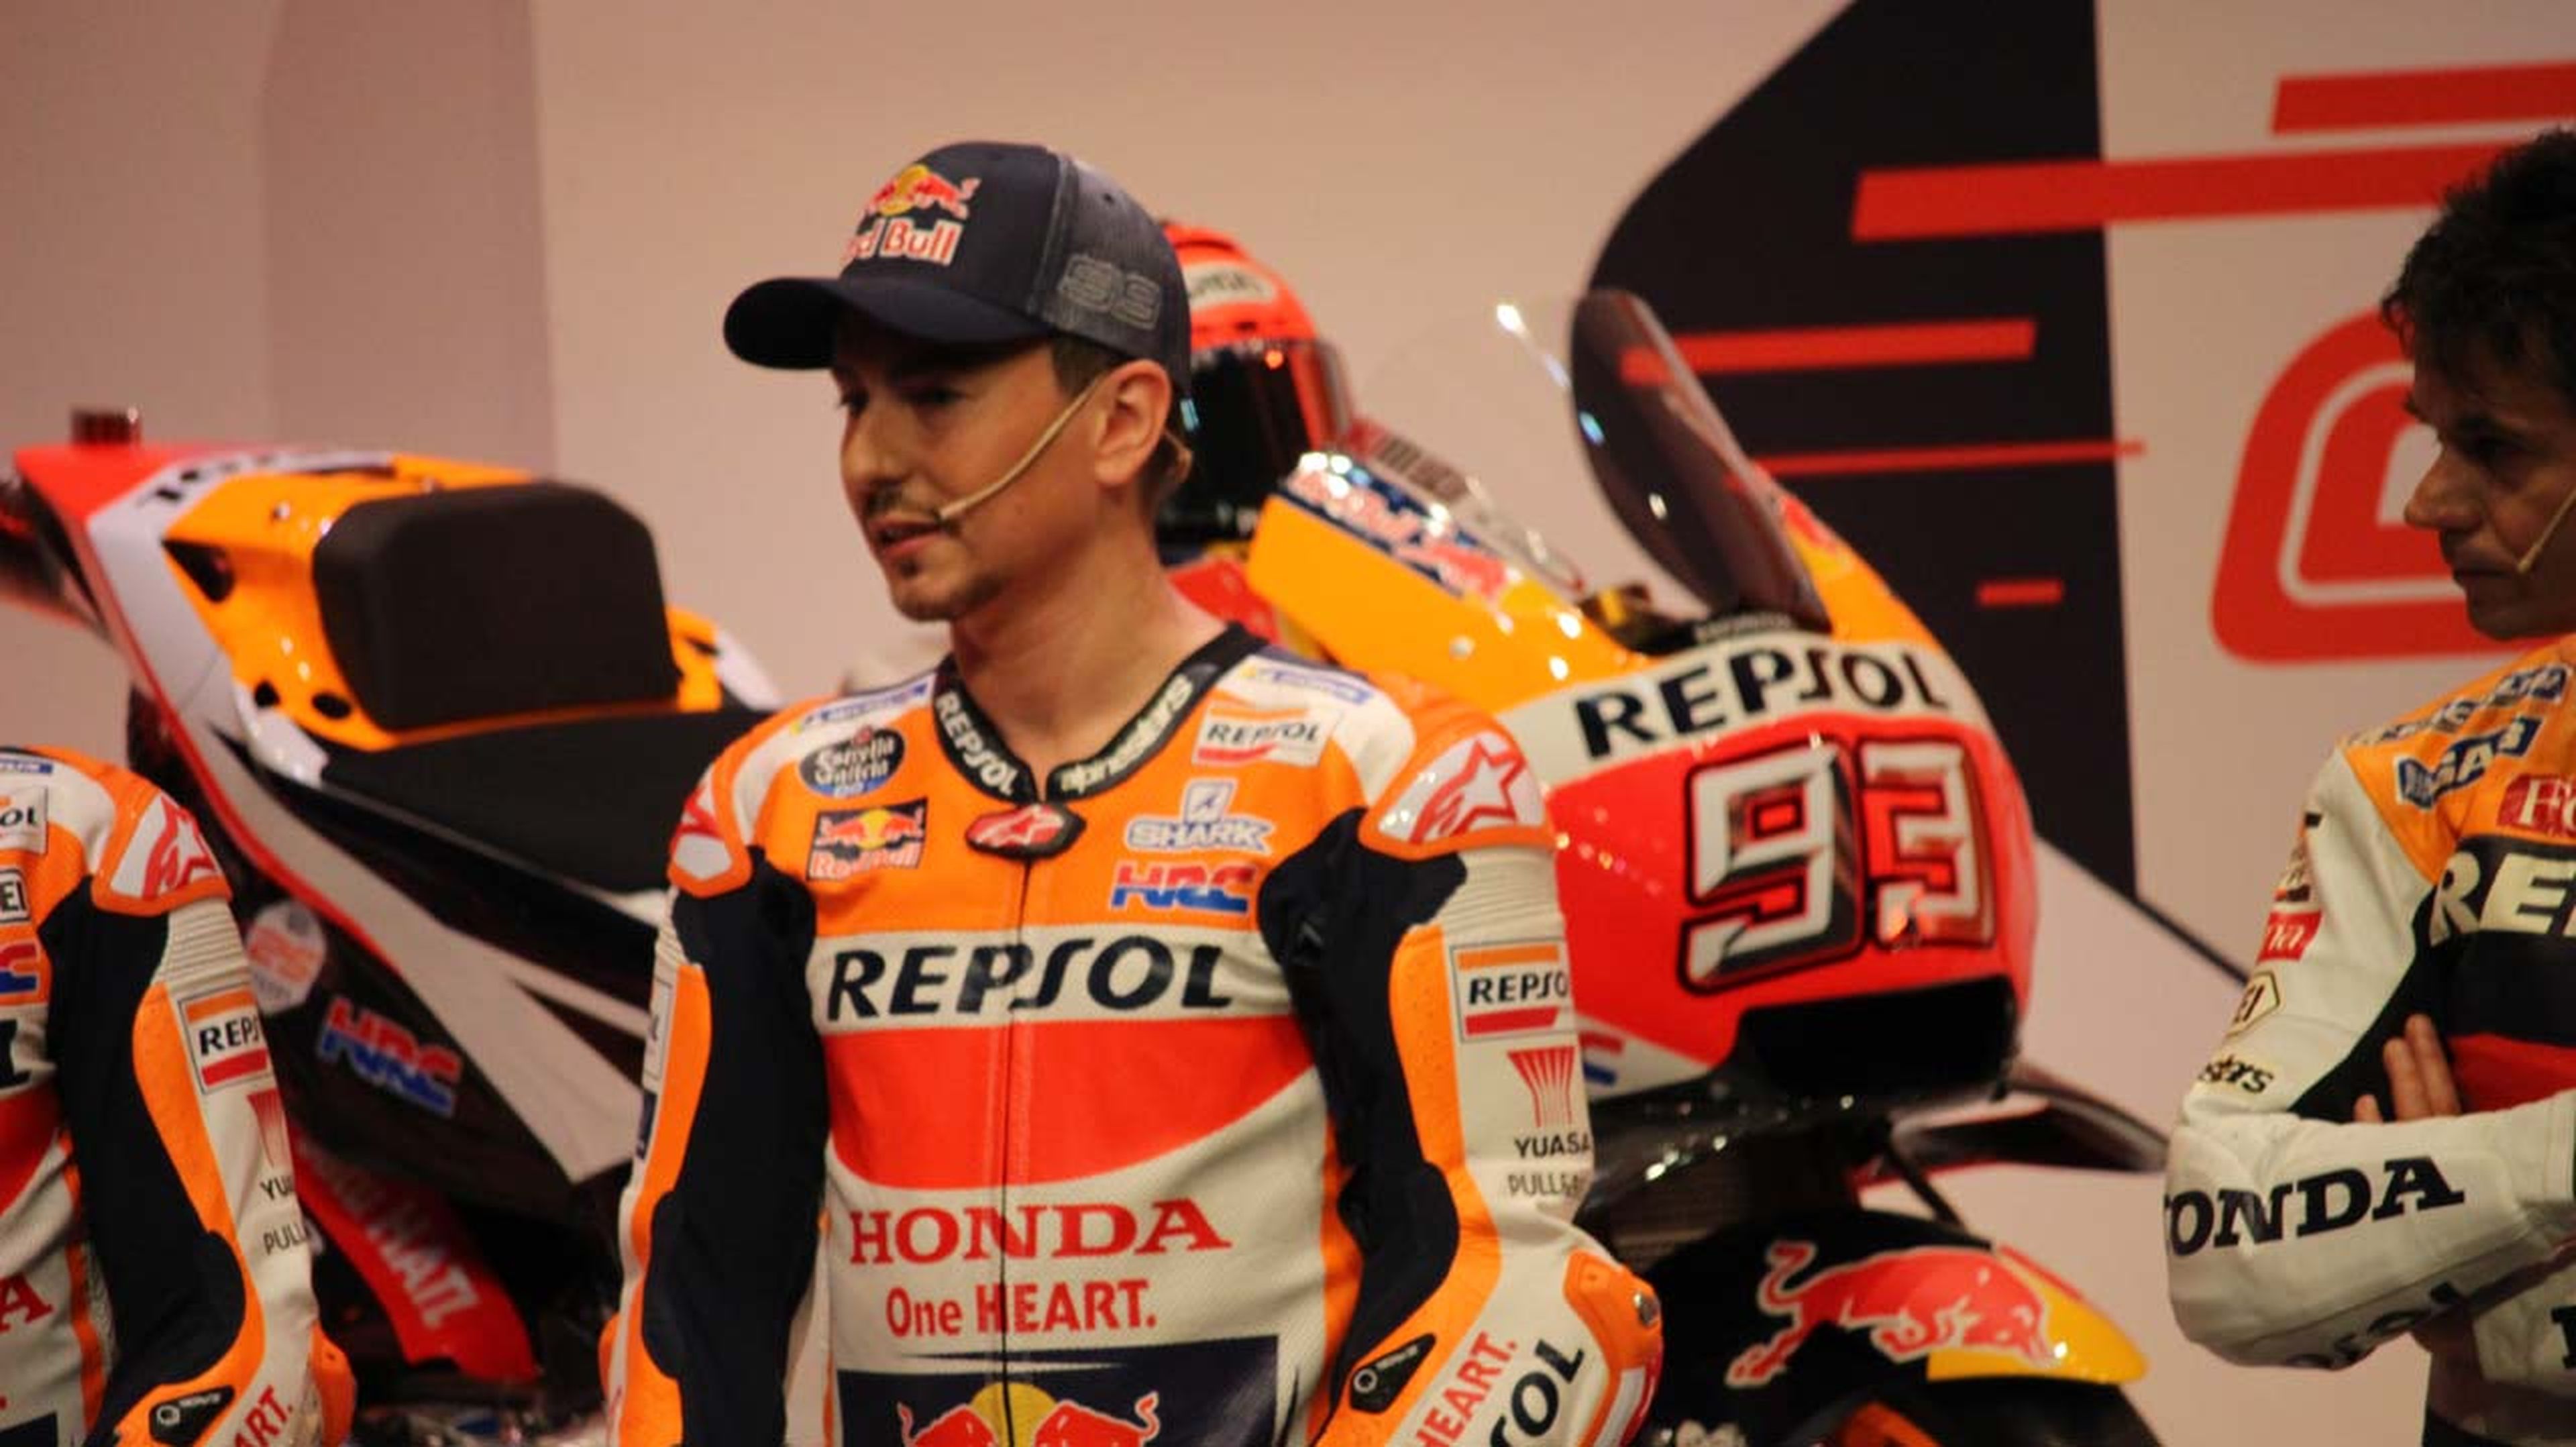 Presentación de Repsol Honda MotoGP con Márquez y Lorenzo